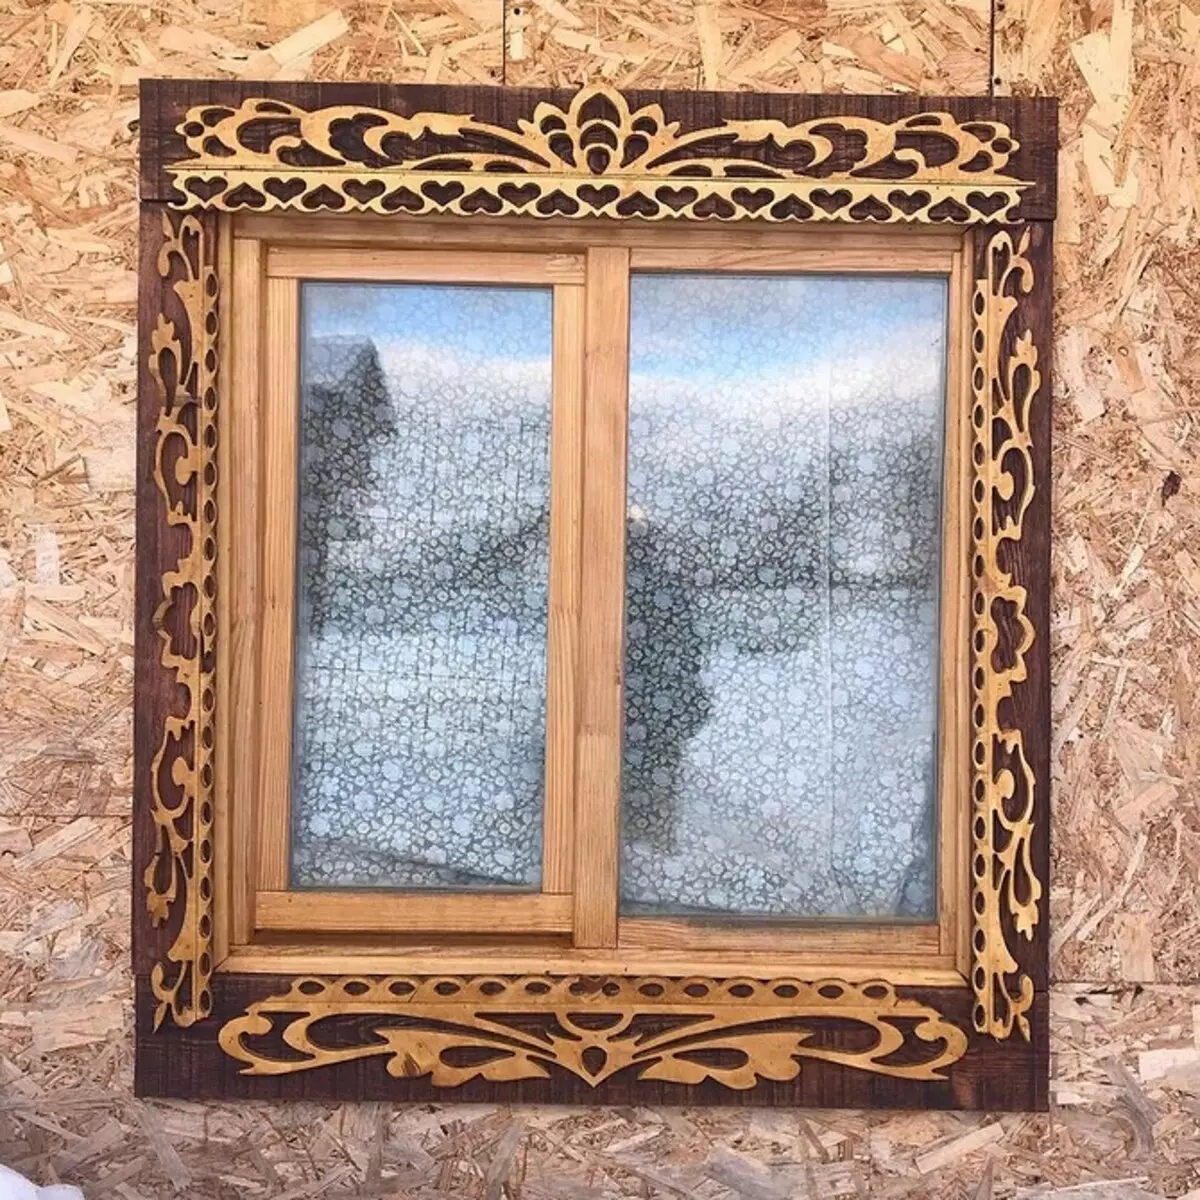 Platbands intagliato sulle finestre in una casa di legno: maternità e installare fallo da te 9481_39